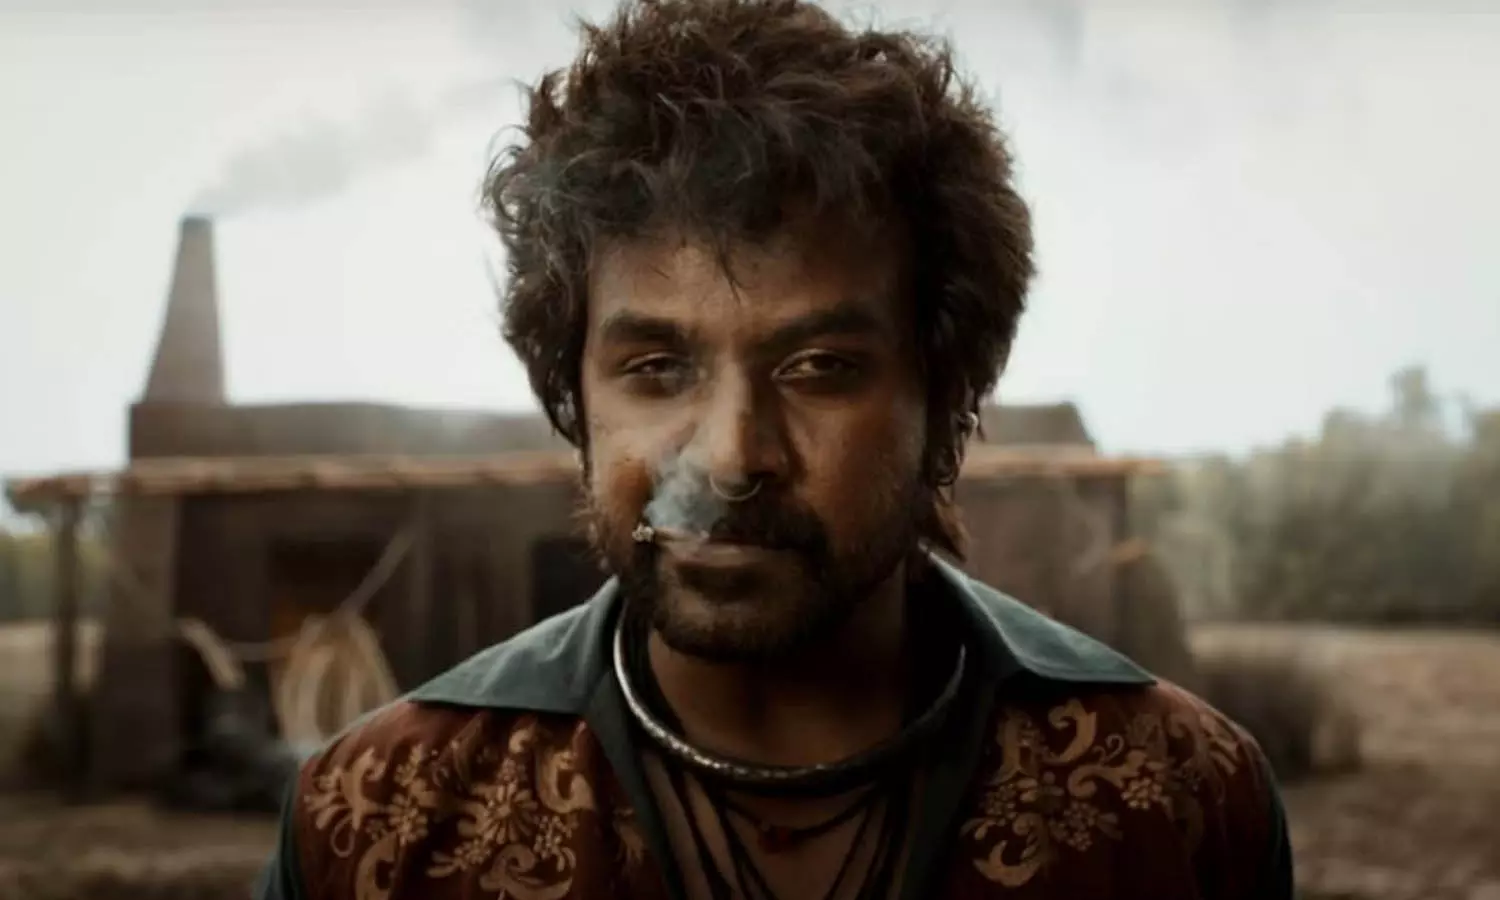 தீபாவளிக்கு பட்டையை கிளப்ப வரும் ஜிகர்தண்டா 2.. அதிகாரப்பூர்வ அறிவிப்பு | Tamil cinema jigar thanda 2 movie update